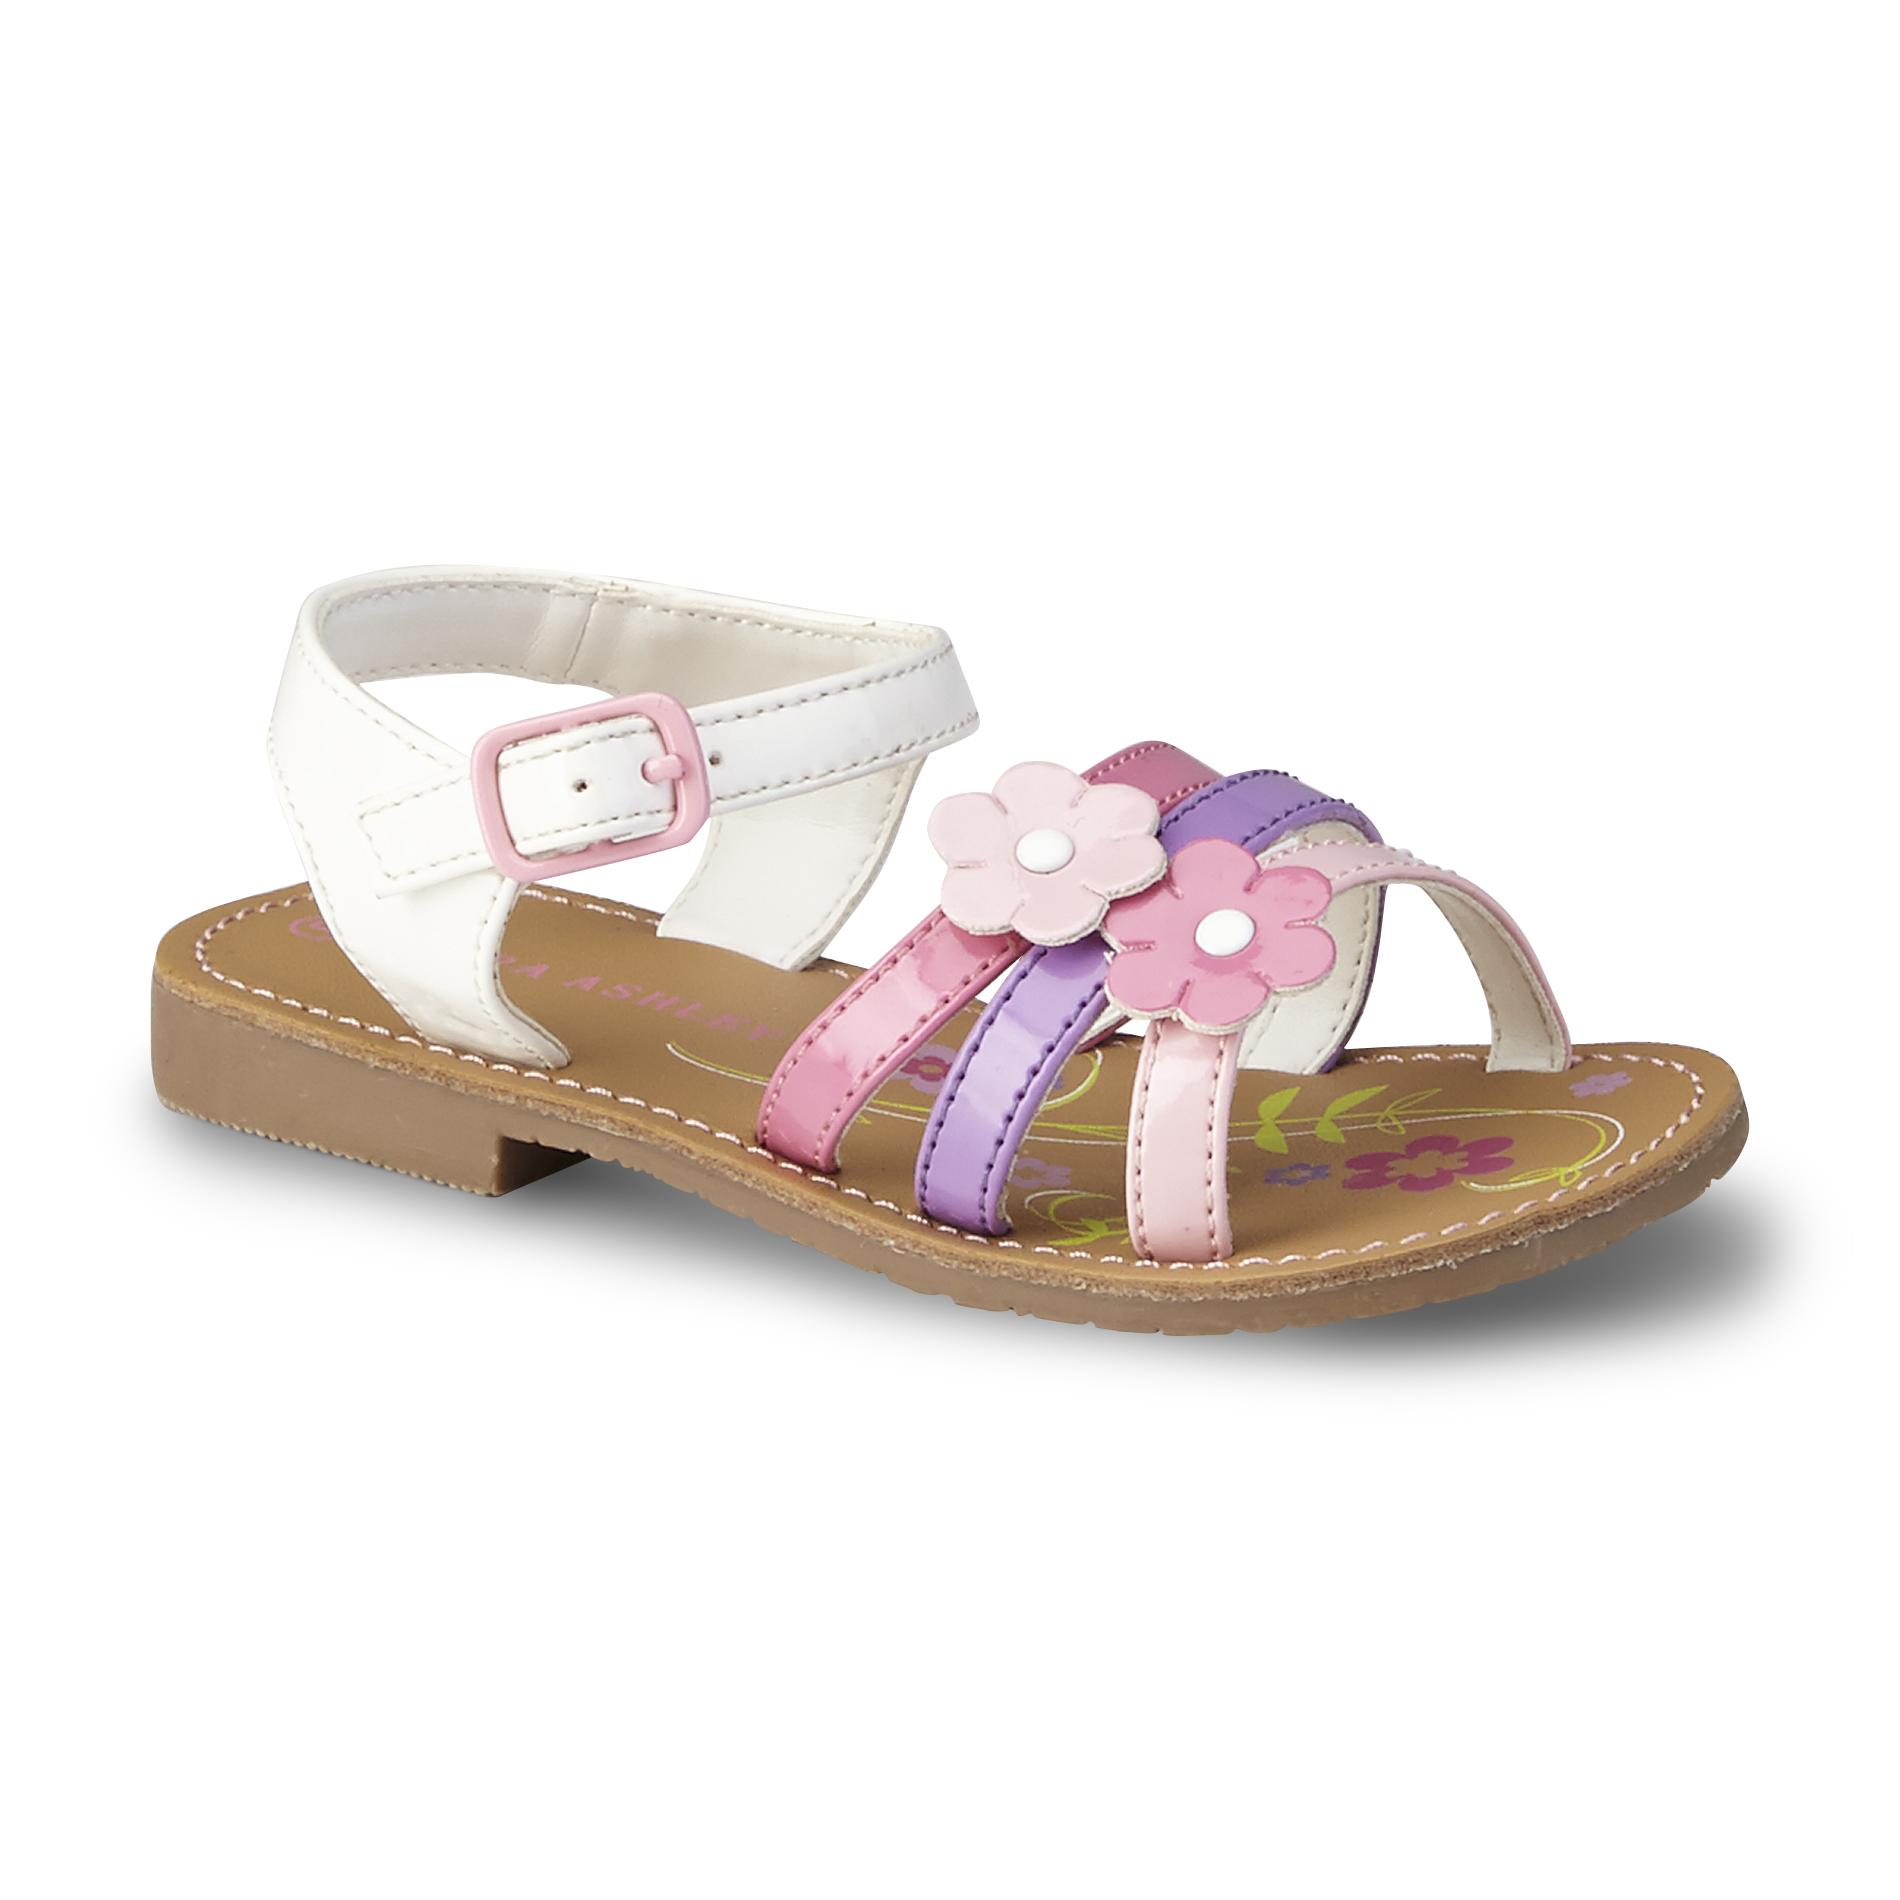 Laura Ashley Toddler Girl's Chloe Pink/Purple/White Sandal